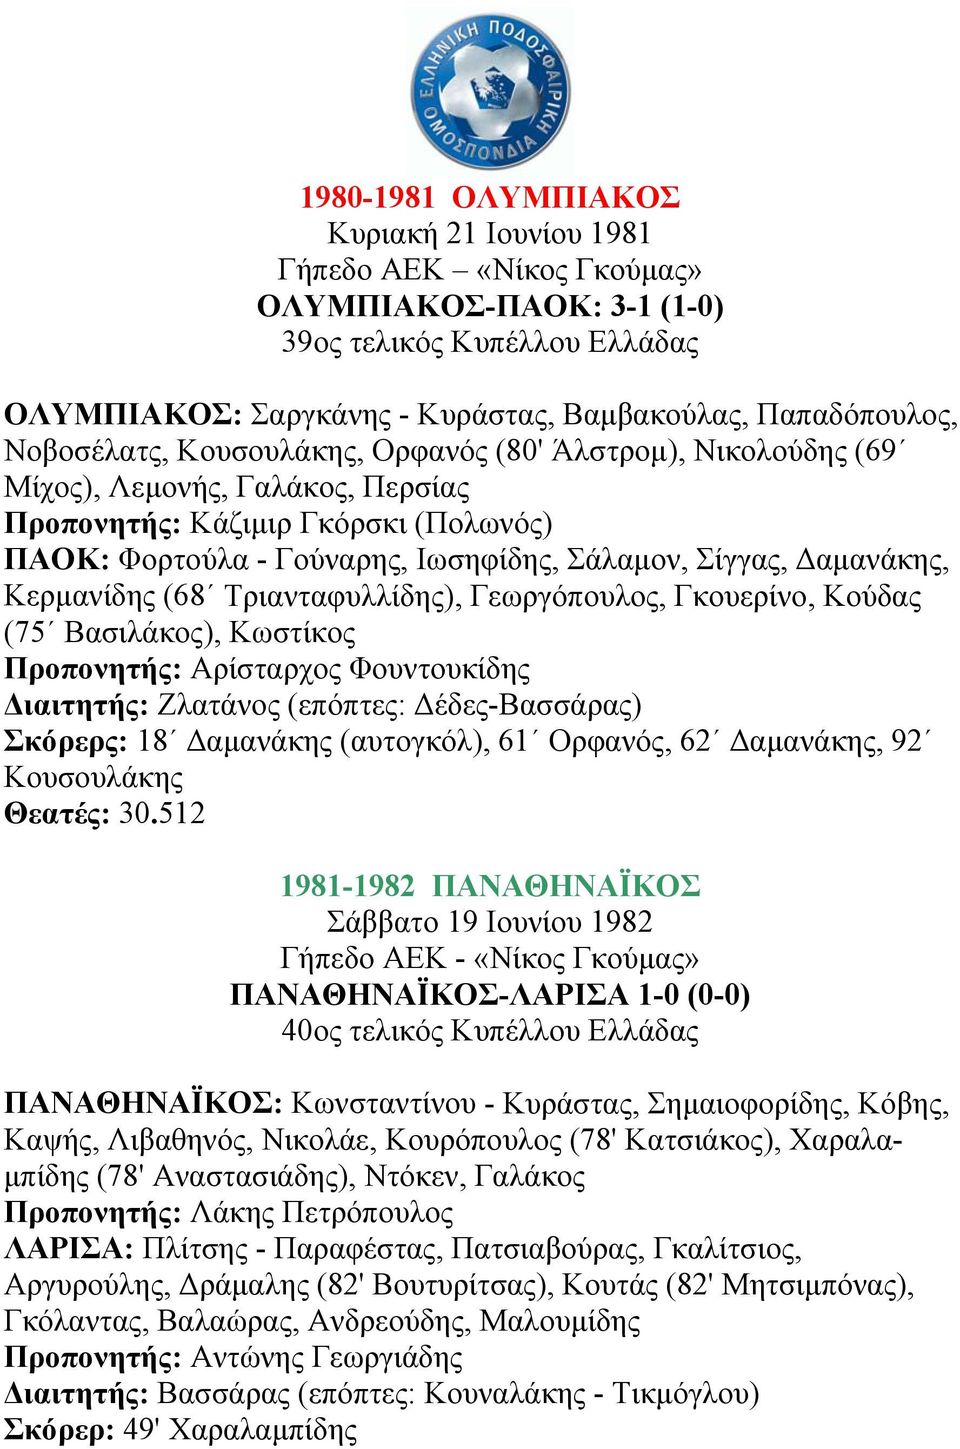 Κερµανίδης (68 Τριανταφυλλίδης), Γεωργόπουλος, Γκουερίνο, Κούδας (75 Βασιλάκος), Κωστίκος Προπονητής: Αρίσταρχος Φουντουκίδης ιαιτητής: Ζλατάνος (επόπτες: έδες-βασσάρας) Σκόρερς: 18 αµανάκης